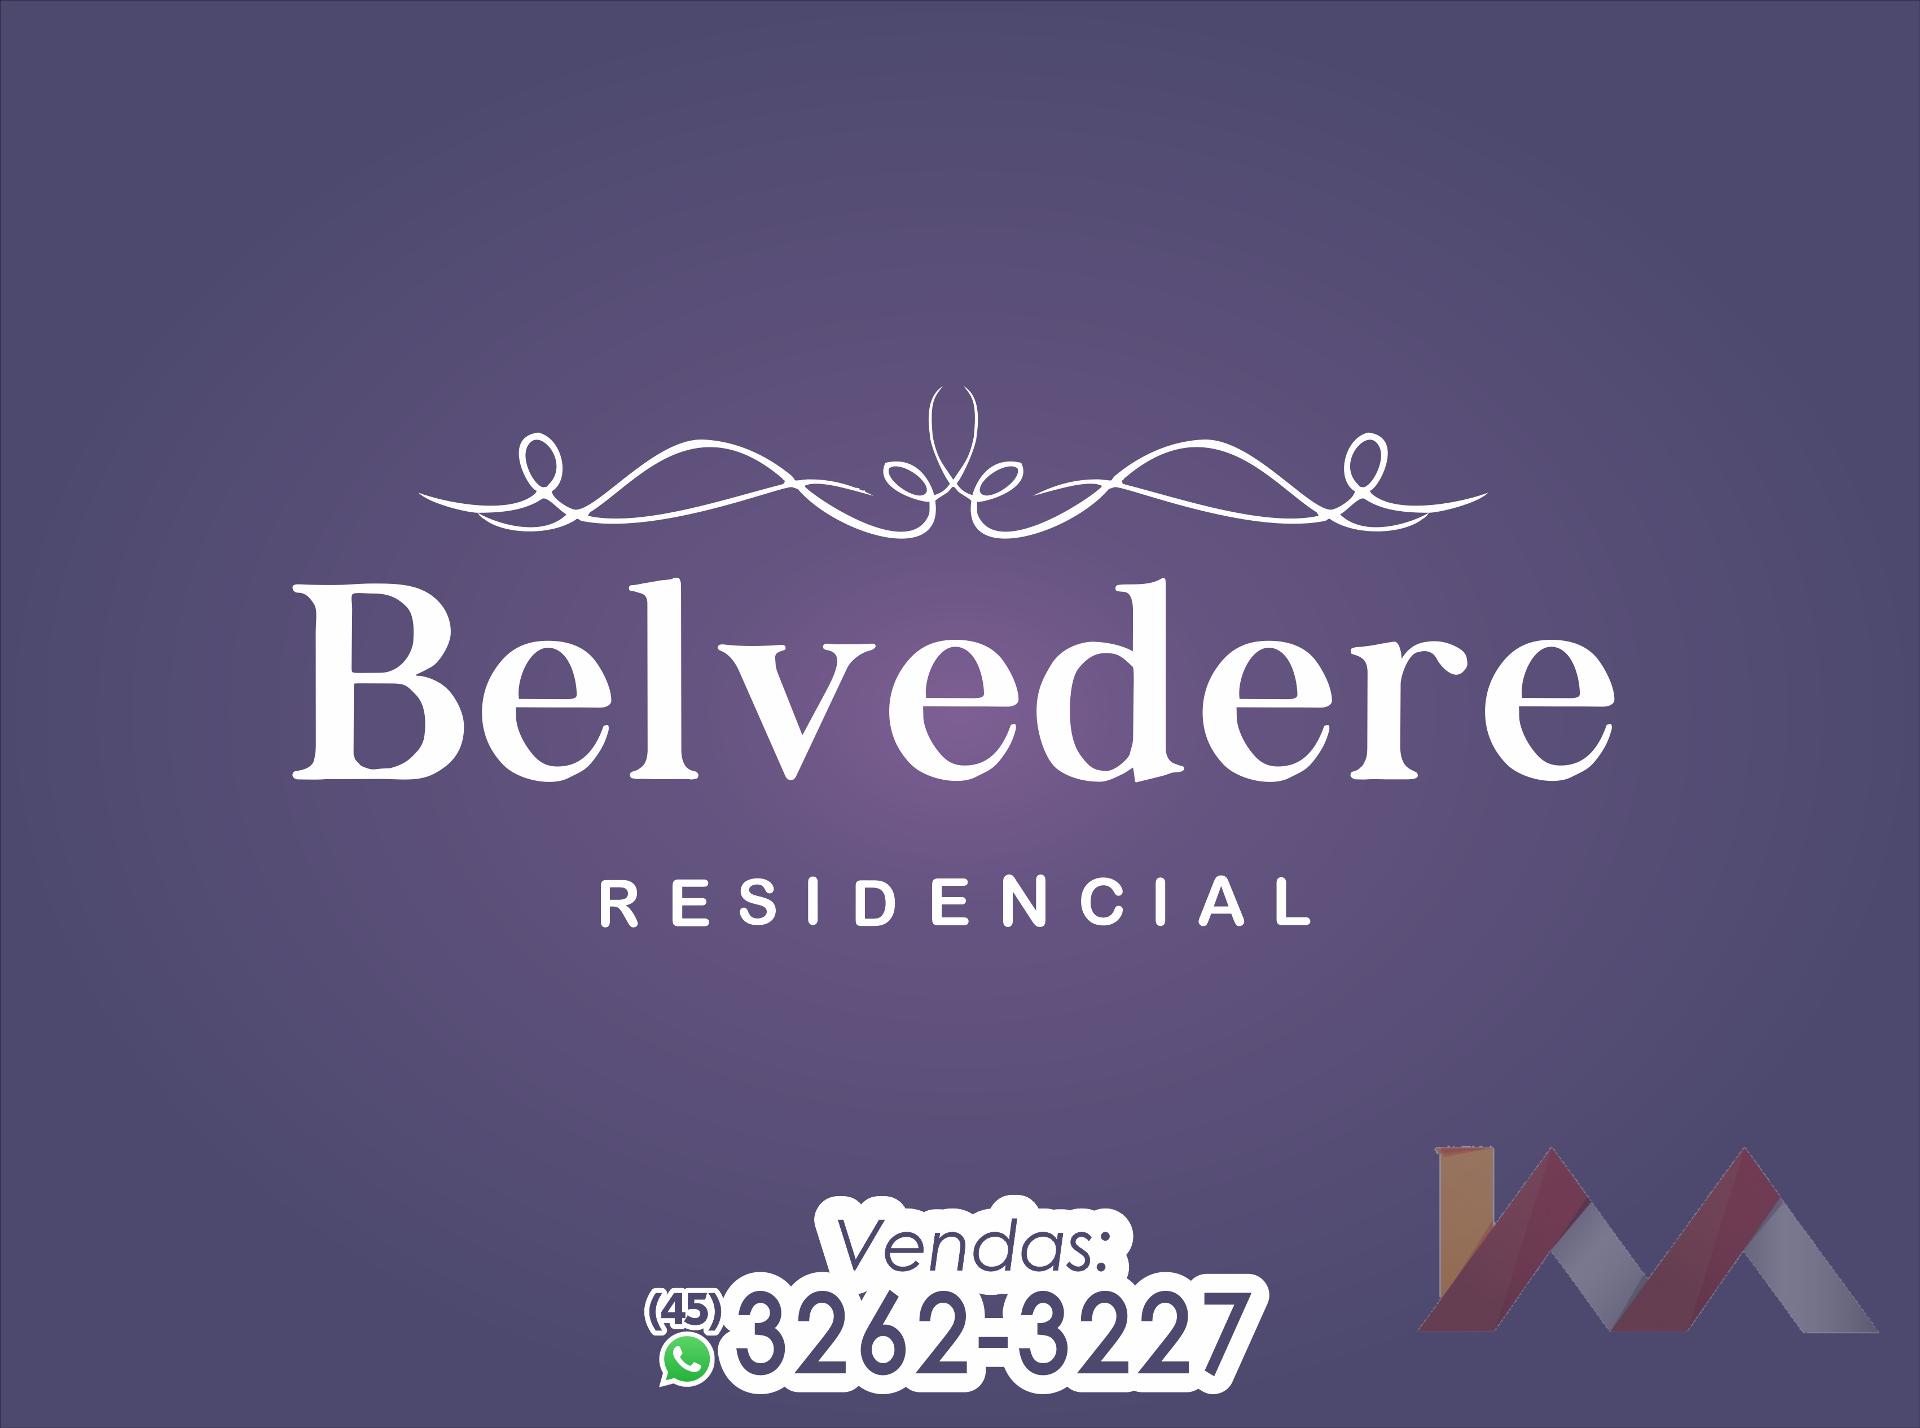 Apartamento 405 do Residencial Belvedere